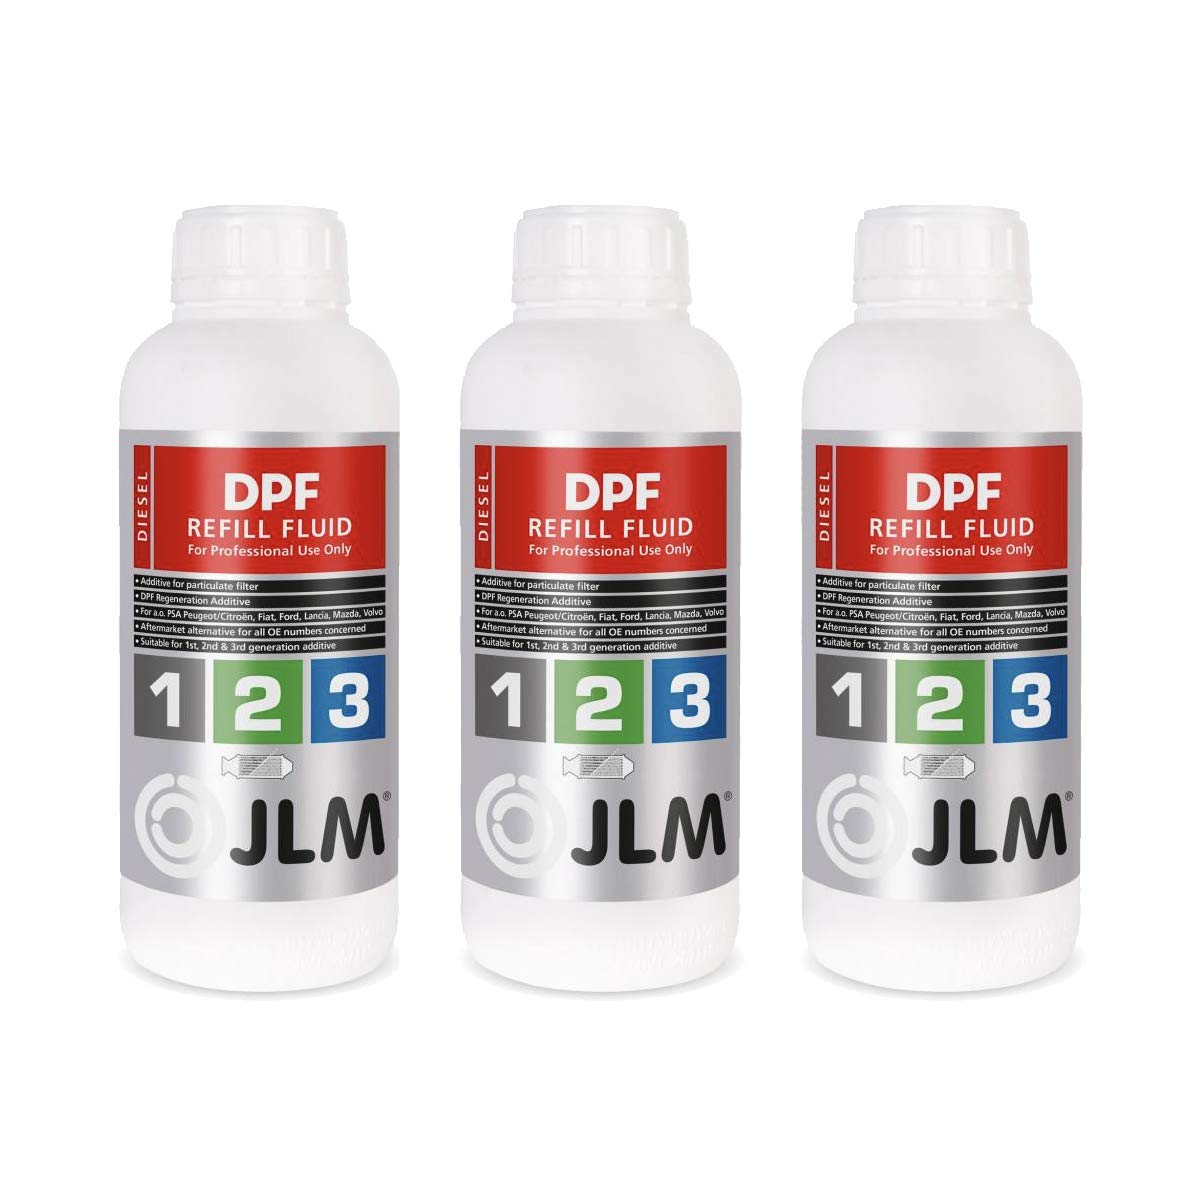 JLM Diesel Partikelfilter (DPF) Nachfüllflüssigkeit 3 x 1 Liter (3 Liter) 3er Pack | JLM DPF Refill Fluid | Regenerationsadditiv von JLM